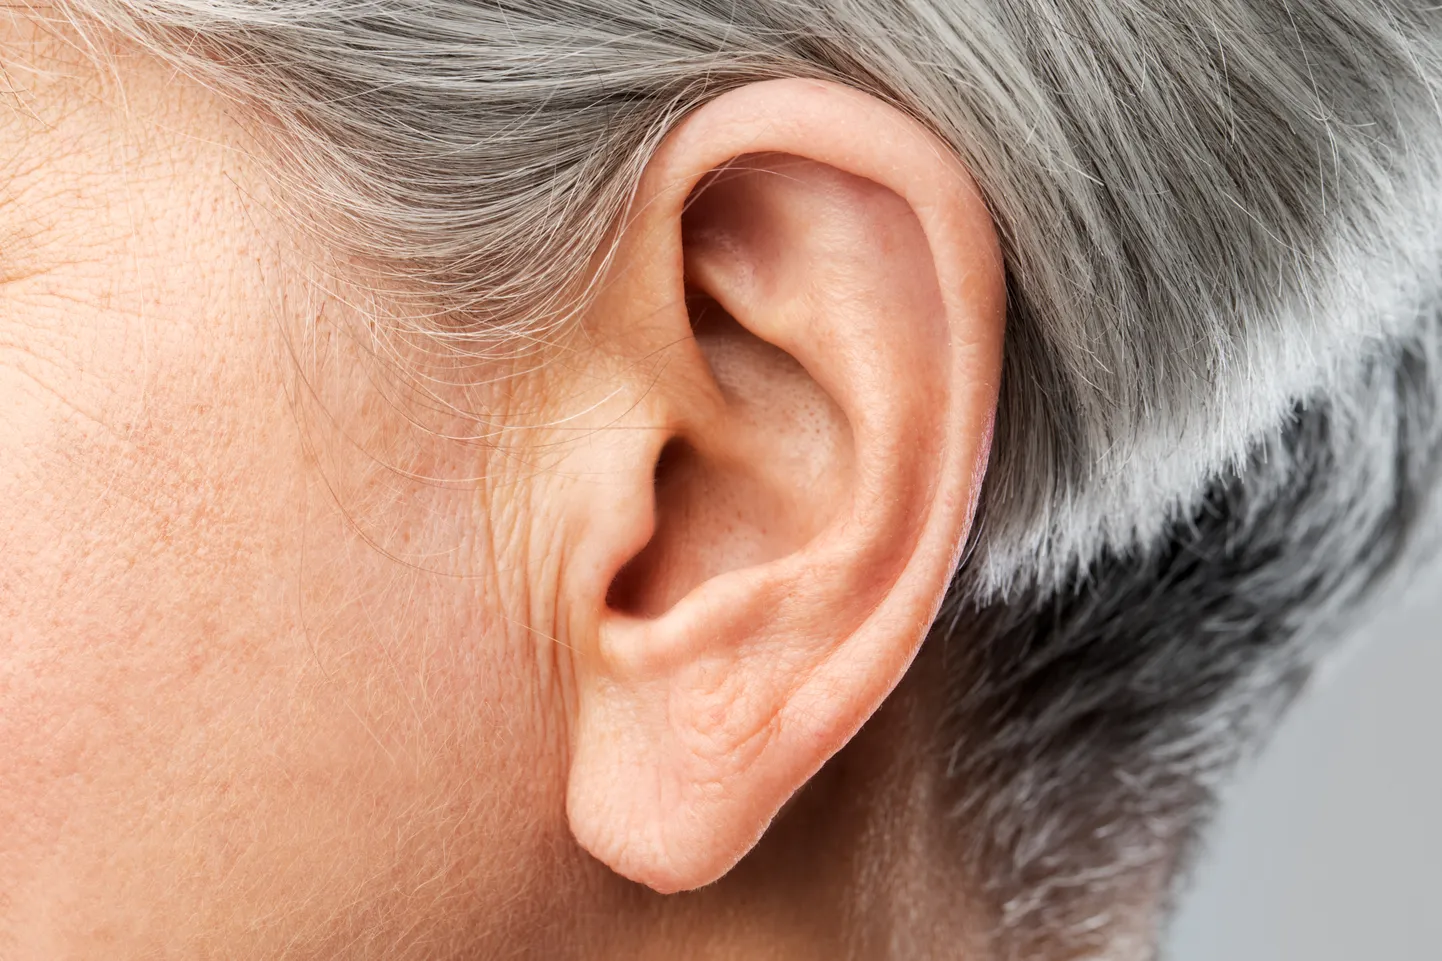 Kõrvades tavaliselt vähki ei esine